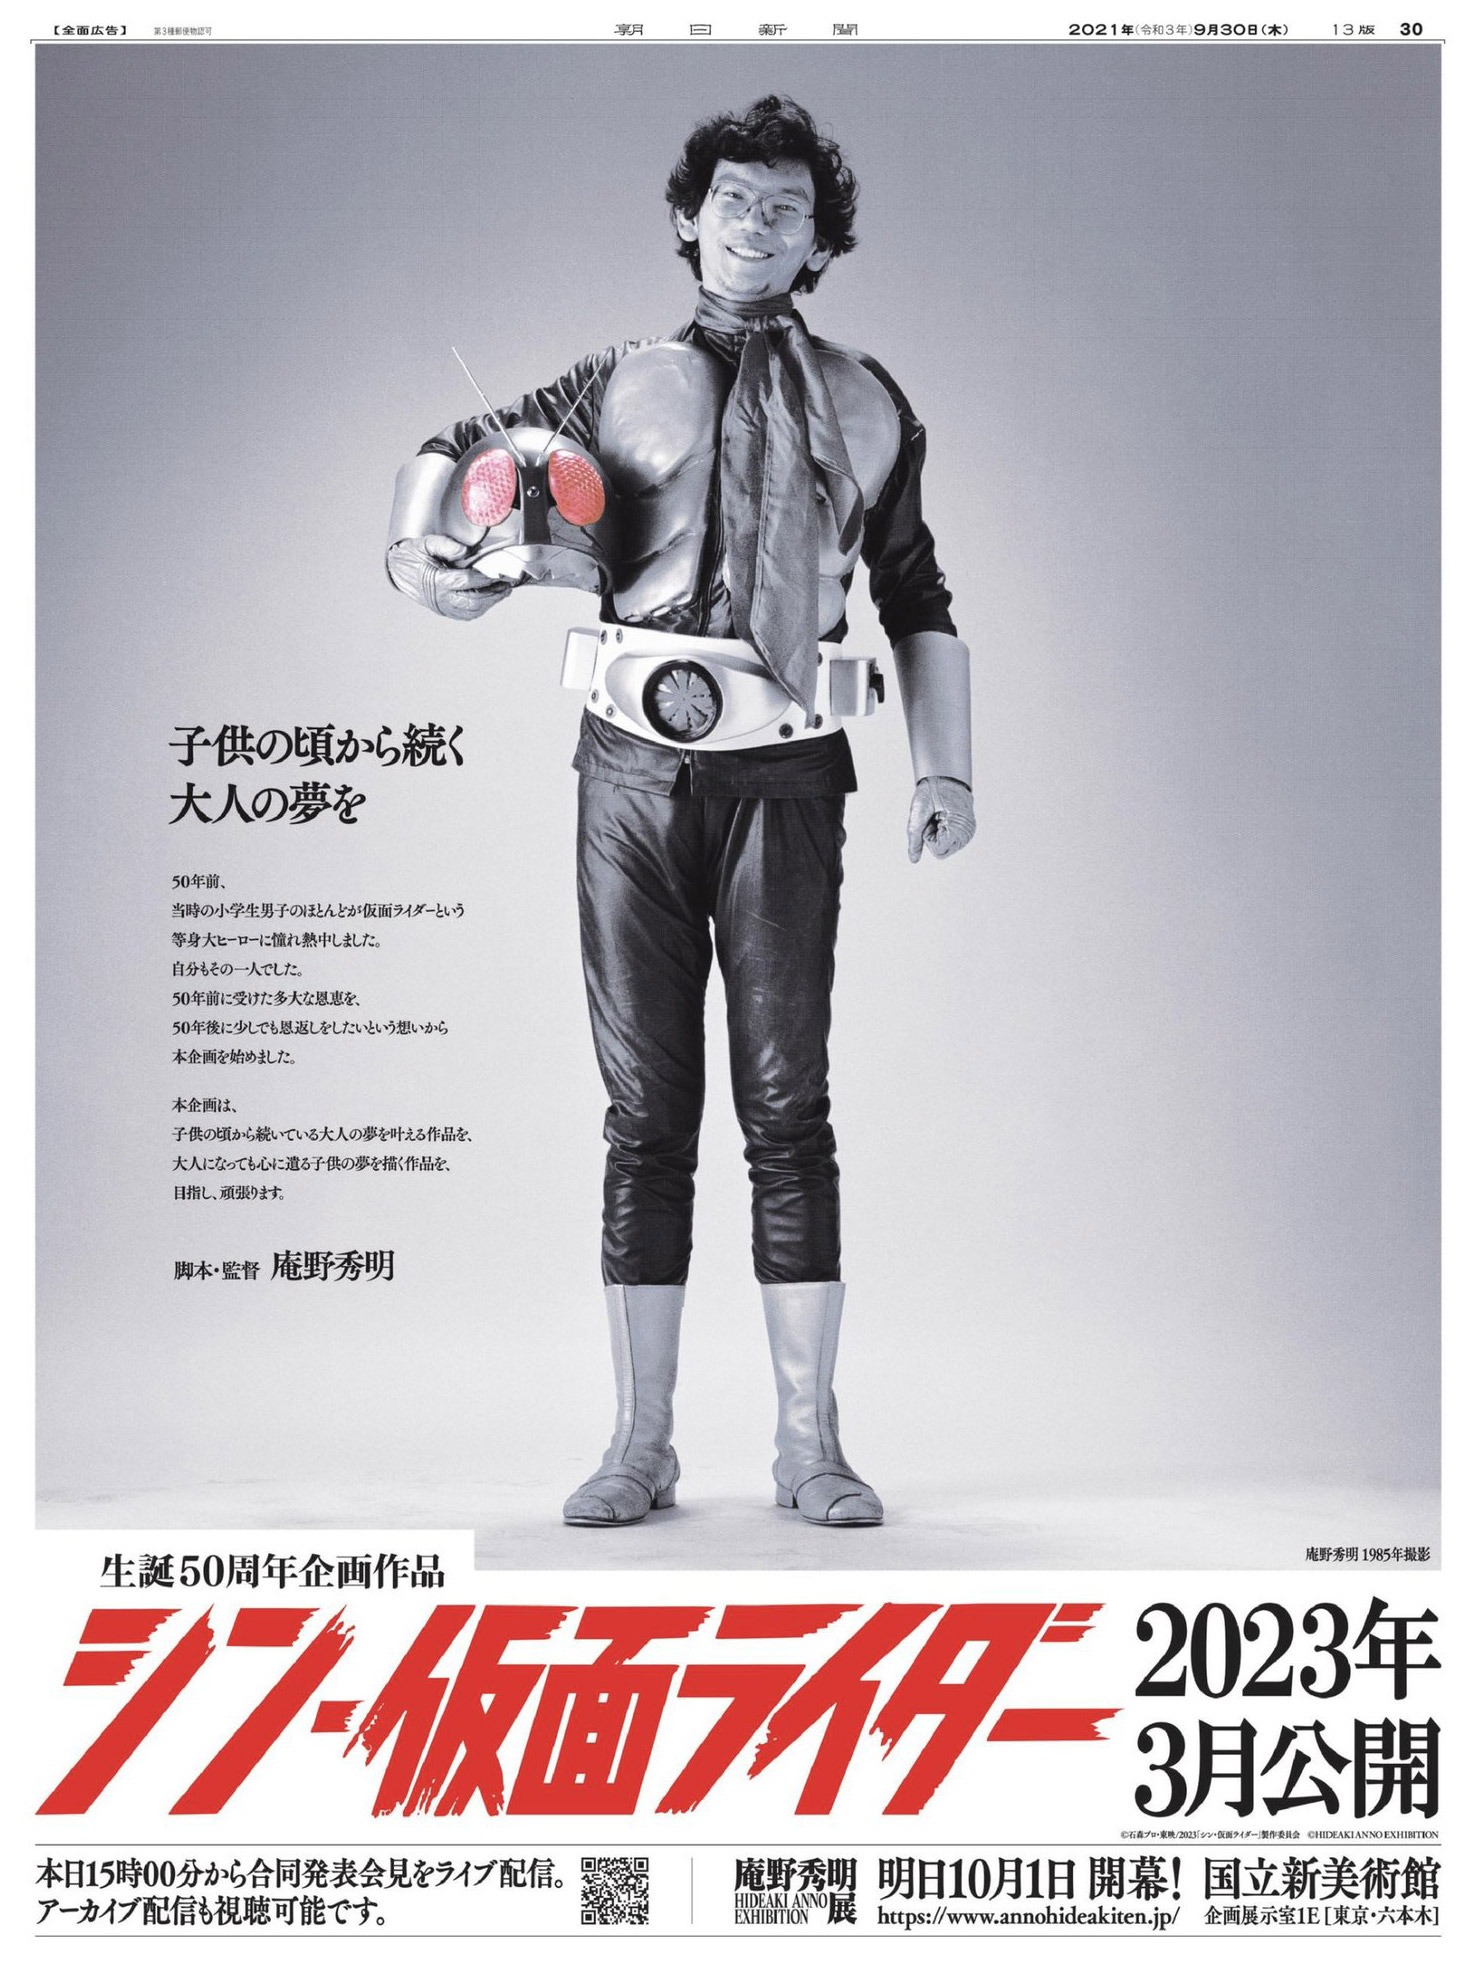 Hideaki Anno hat sich als Kind als Kamen Rider verkleidet